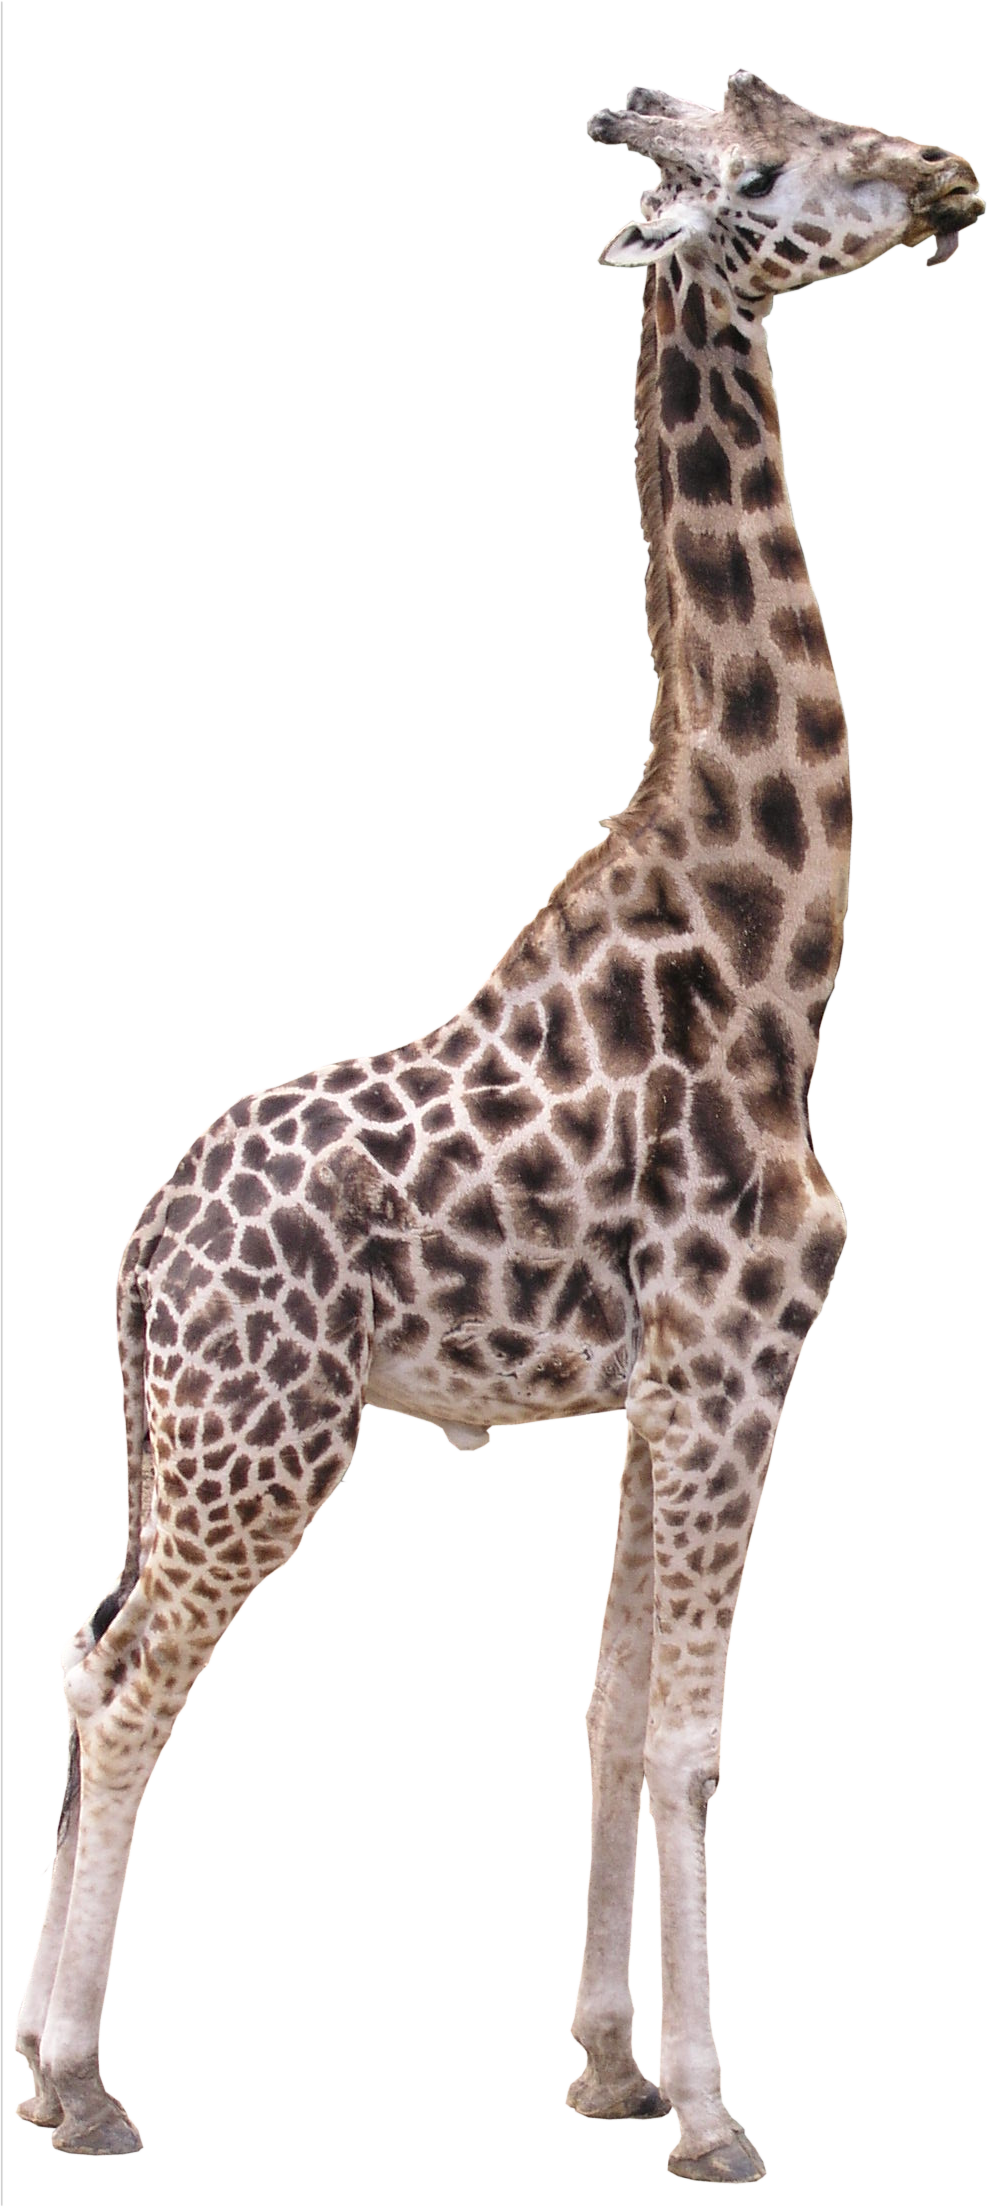 Immagine HQ gratuita della giraffa